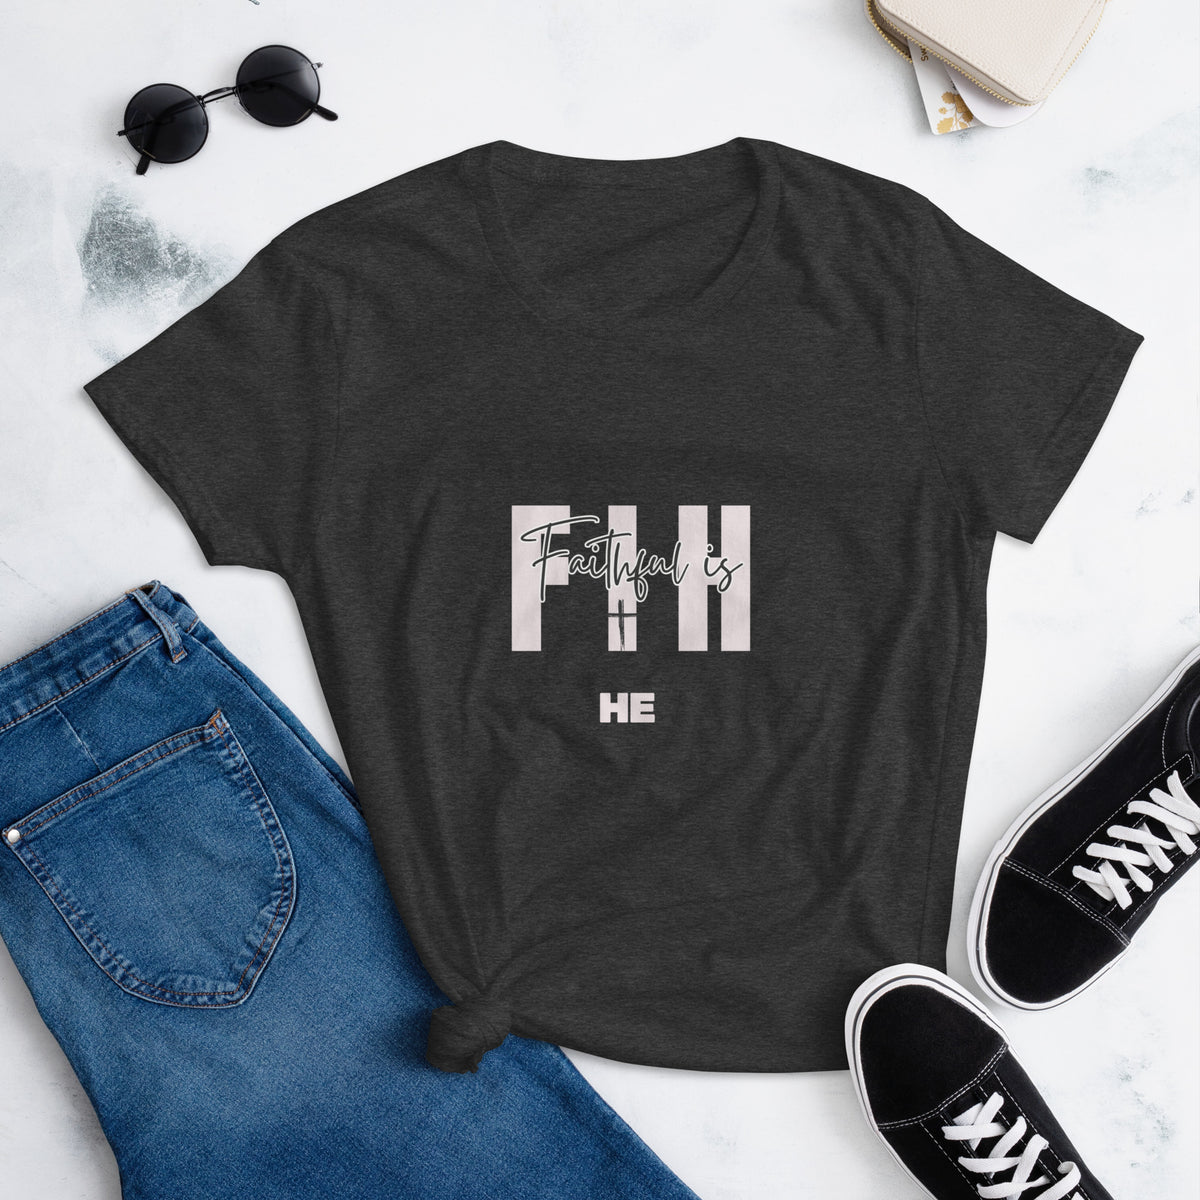 Faithful is HE - women's short sleeve t-shirt